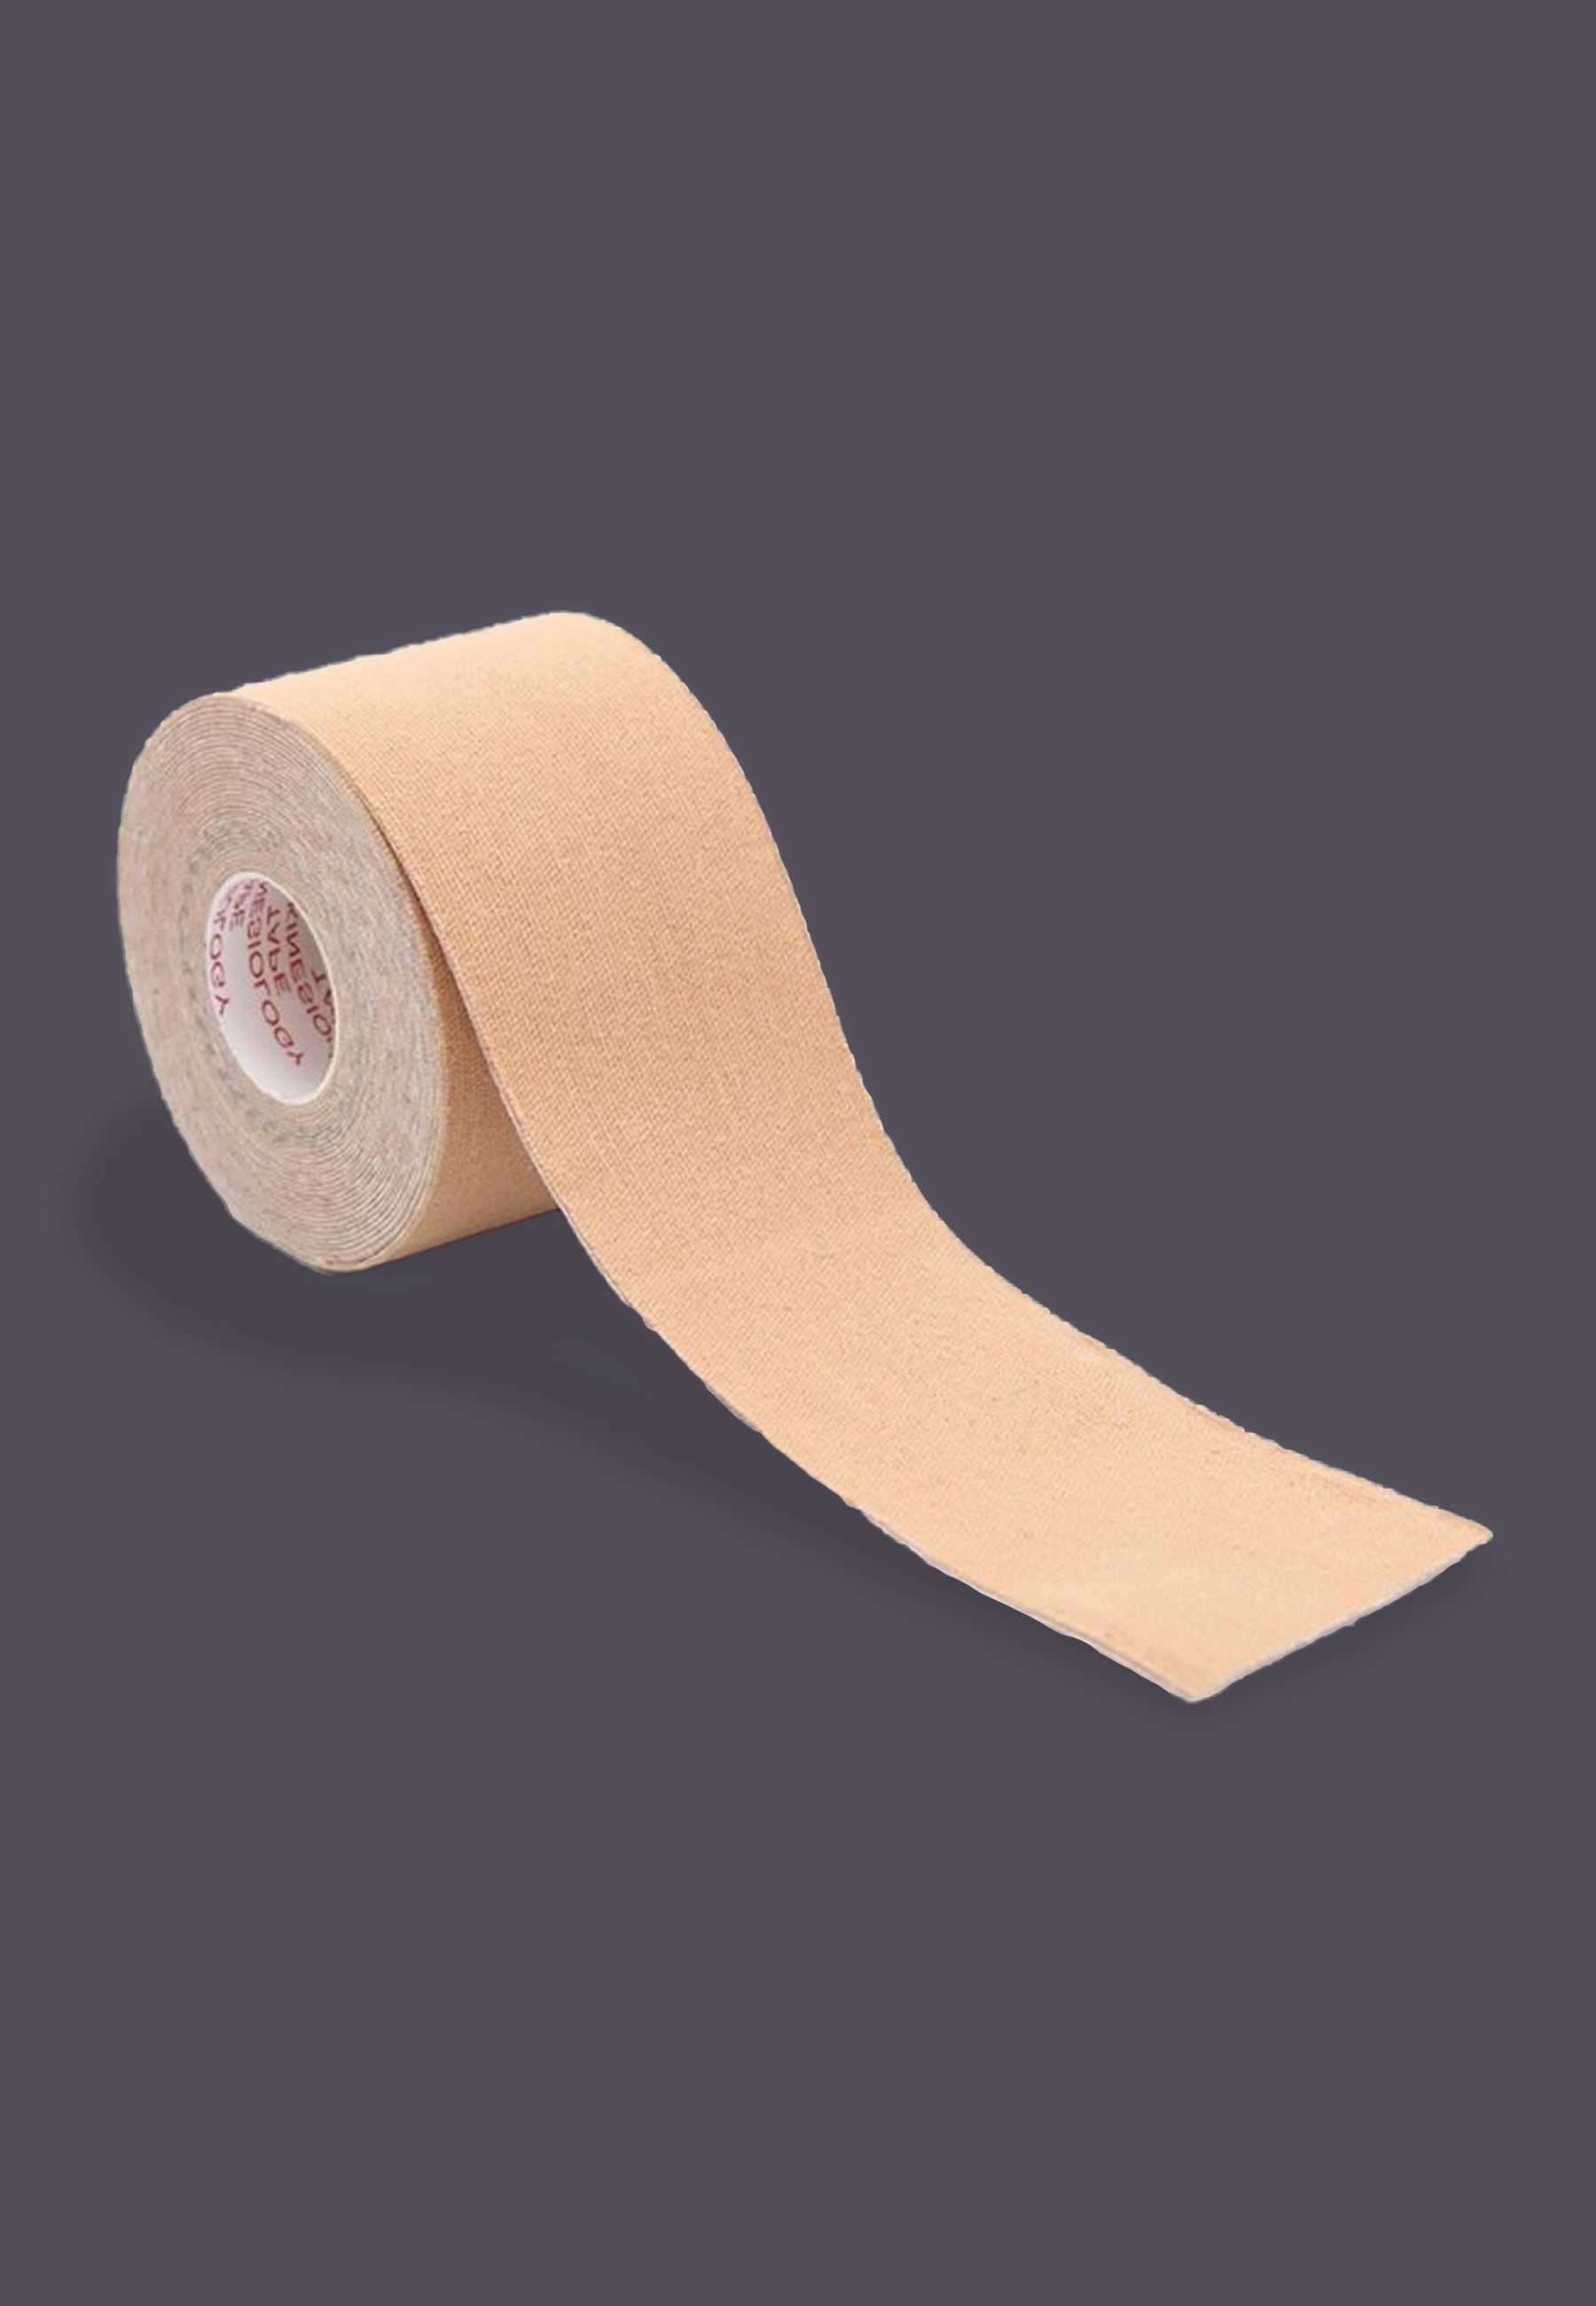 Brown Fabric Book Repair Tape (Price per Roll)